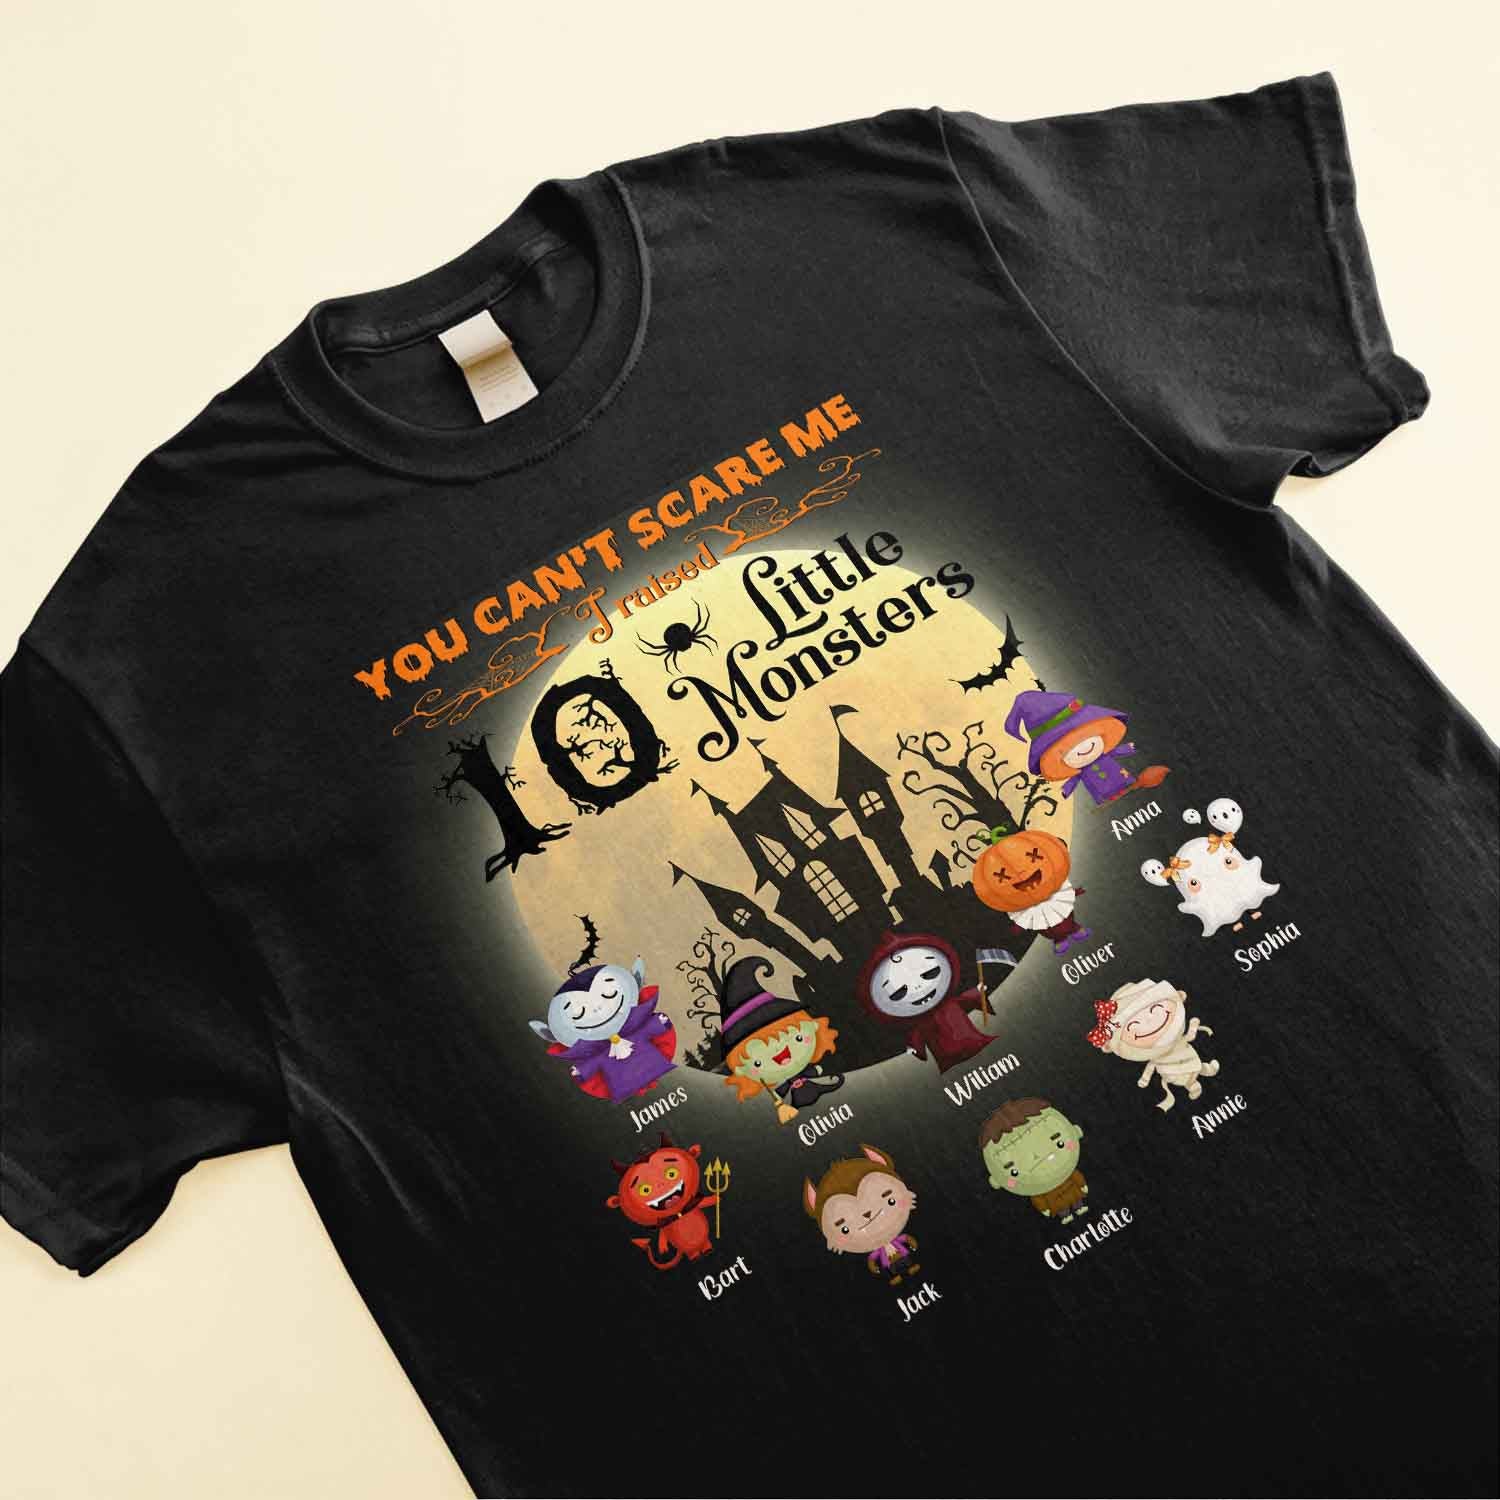 I Raised Little Monster - Personalized Shirt - Halloween Gift For Nana